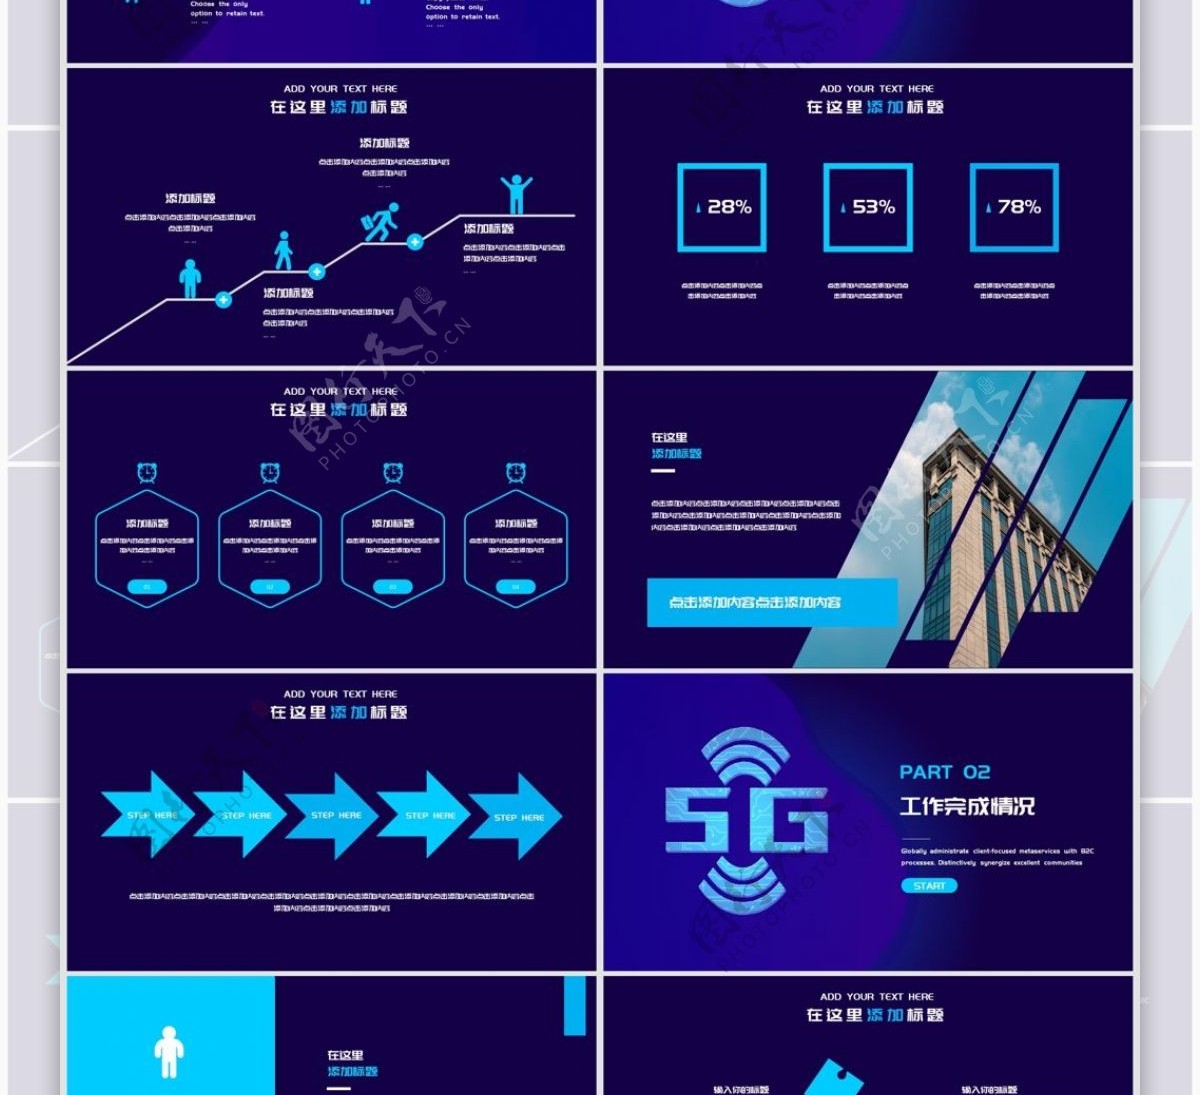 2019蓝色5G光速互联网时代PPT模板